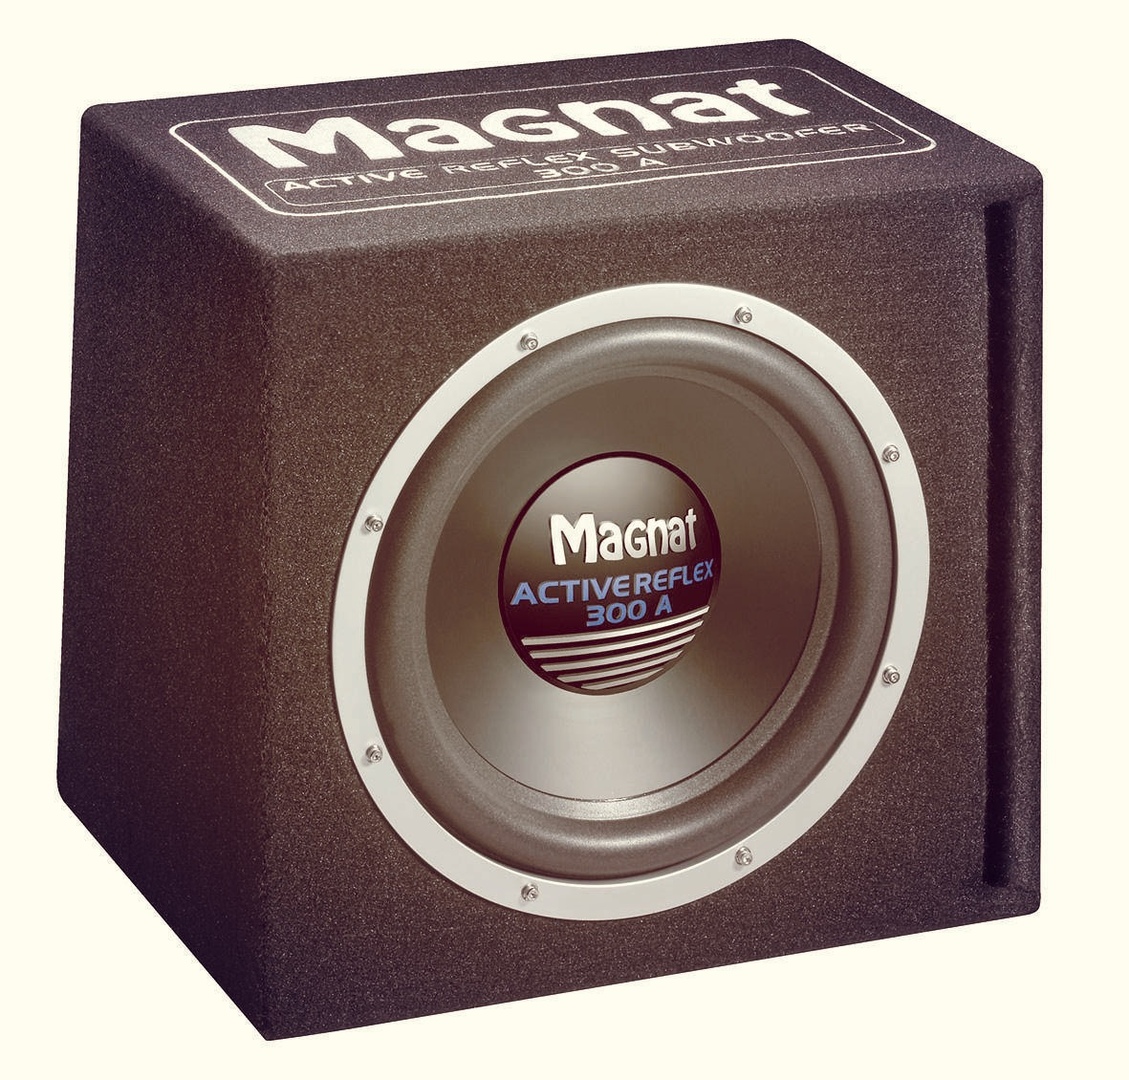 Magnat Active REFLEX 300A